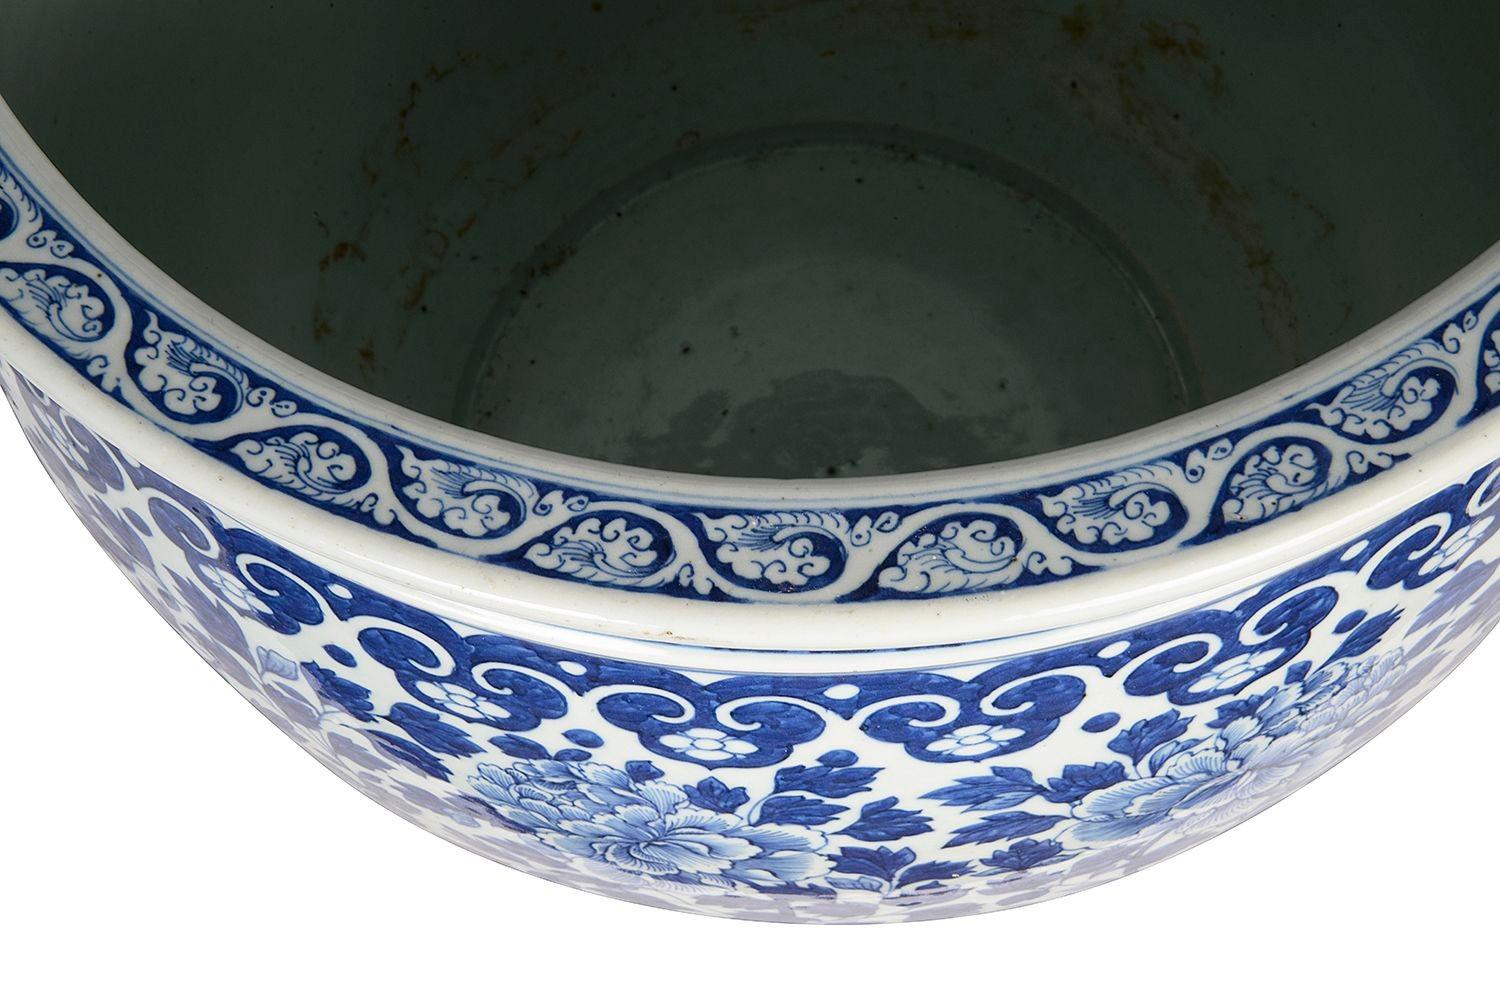 Impressionnante jardinière en porcelaine chinoise bleu et blanc du XIXe siècle, aux couleurs vives, avec un décor de motifs classiques sur les bords, et un décor de chrysanthèmes et de feuilles à l'intérieur.

Lot 75